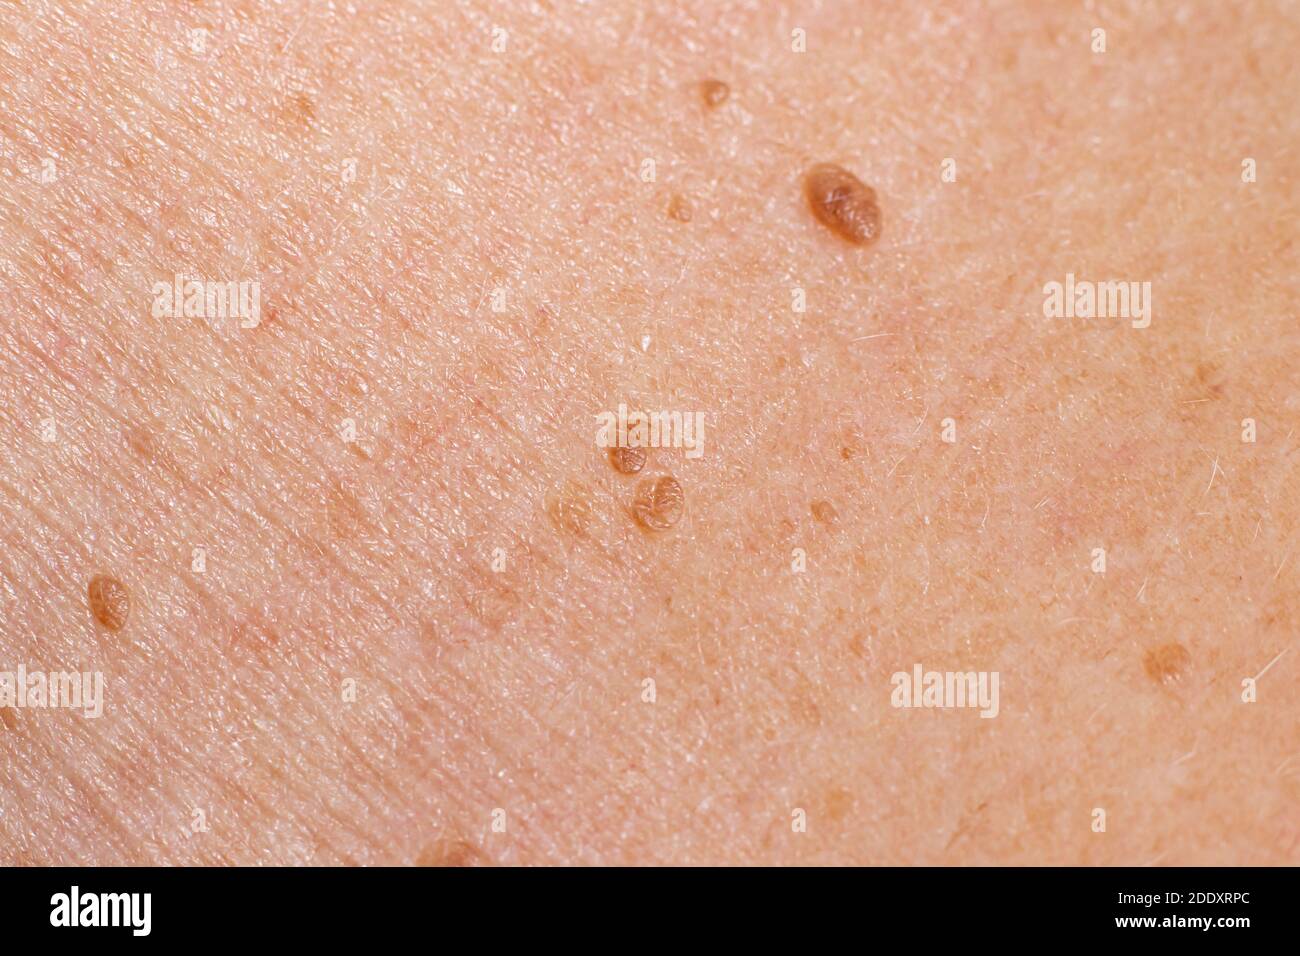 Papilloma sulla pelle umana - tumore benigno sotto forma di mole, nevo, tumore. Papillomatosi Foto Stock